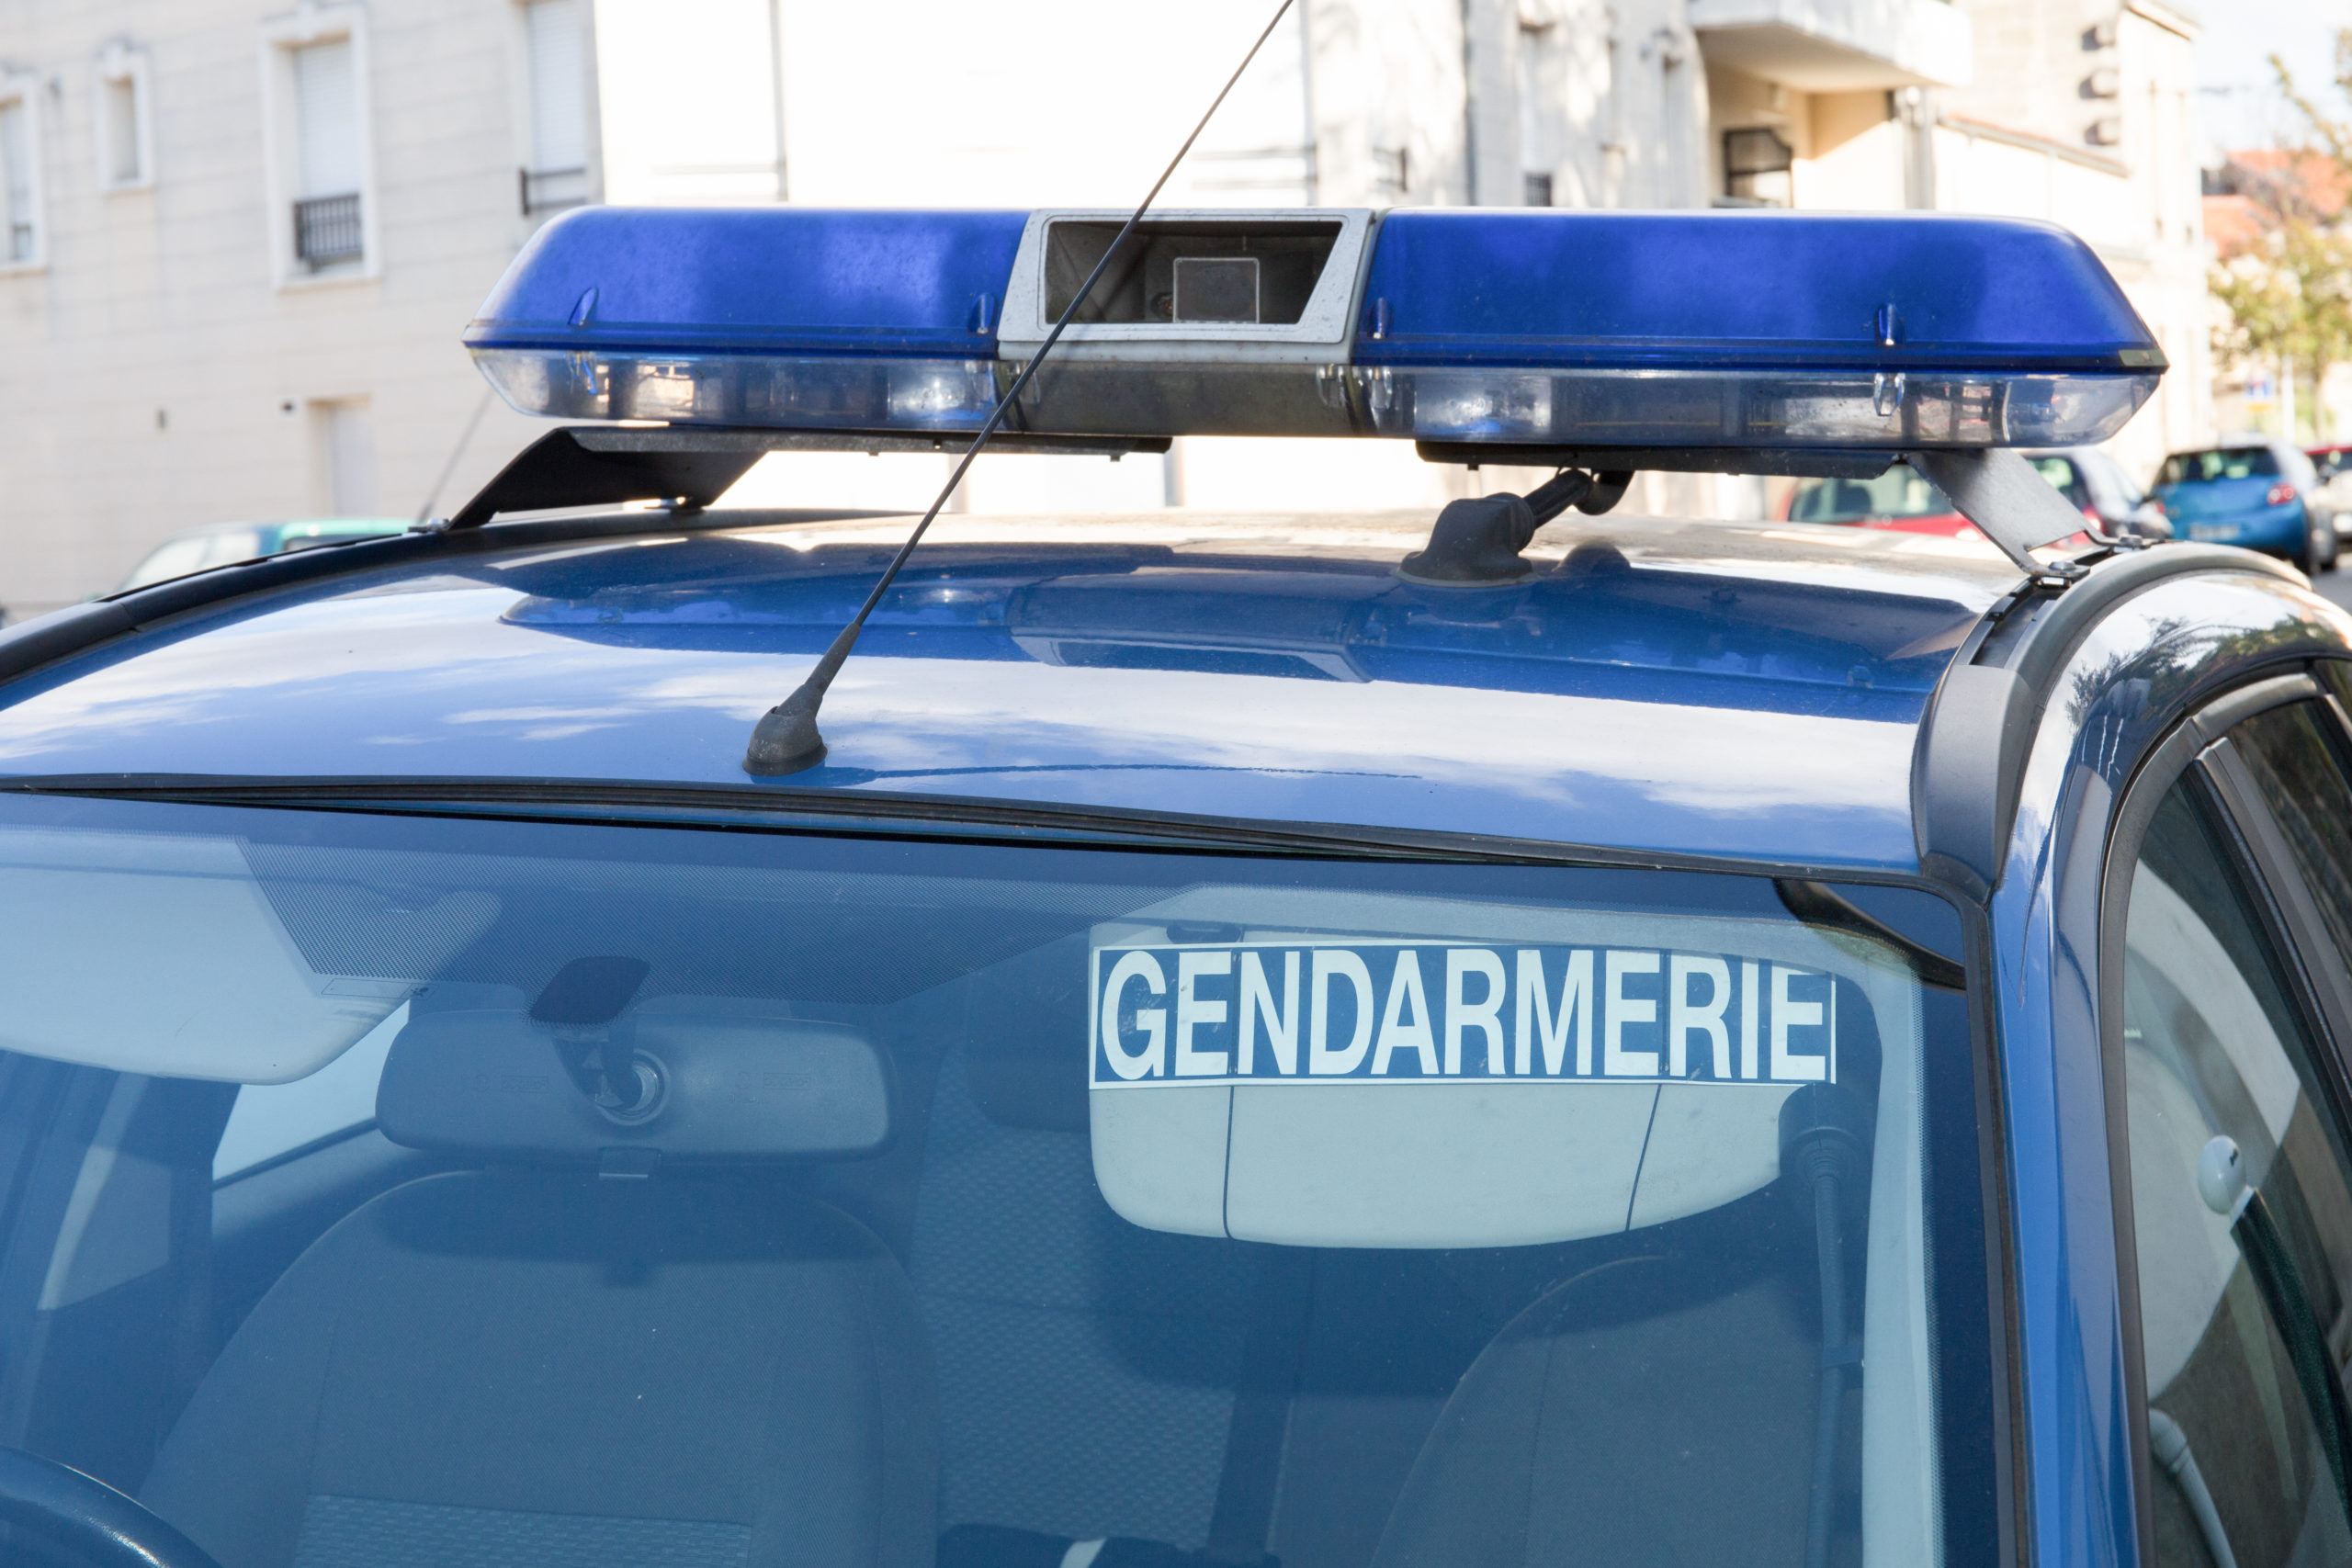 La gendarmerie installe des sifflets anti-gibier sur ses véhicules